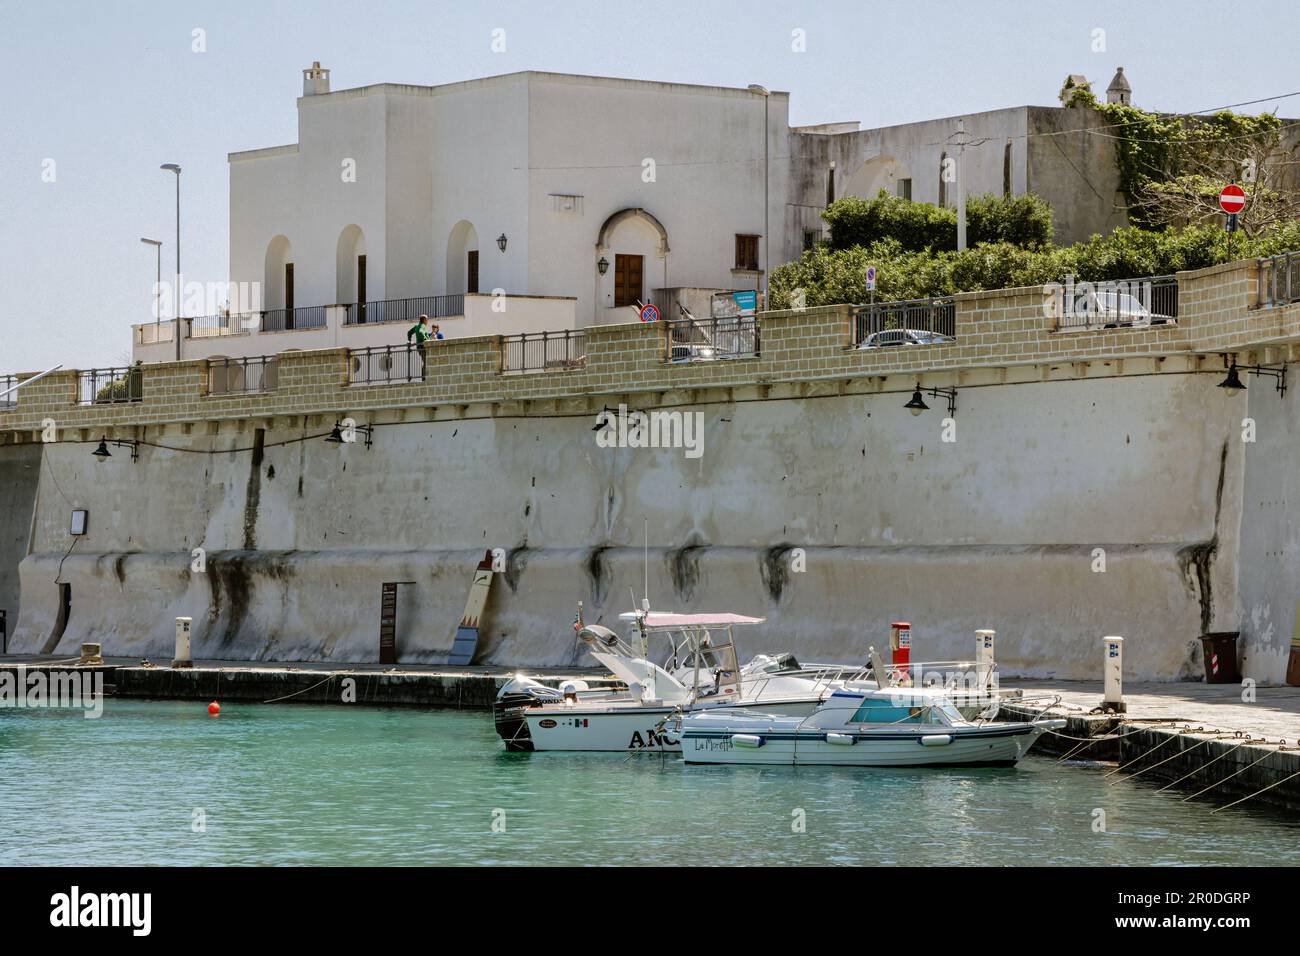 Der Hafen von Tricase, der seit 1400 bekannt ist, ist ein natürlicher Einlass - Salento, Apulien, Italien Stockfoto